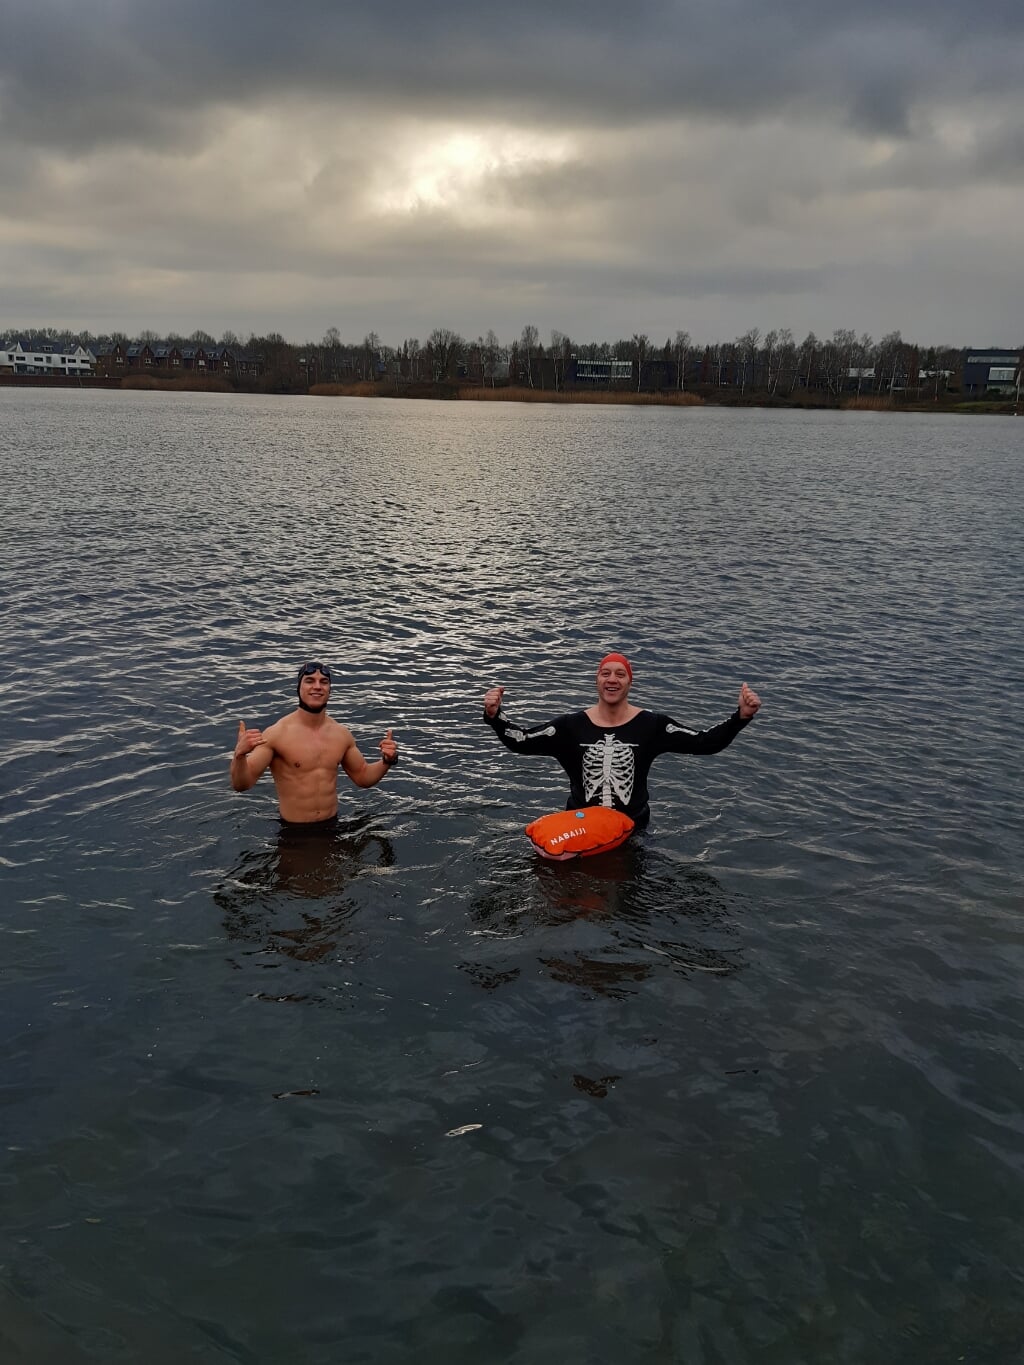 Liempdenaar Collin van Dijk (links) tijdens zijn nieuwjaarsduik in de Tilburgse surfplas. Naast hem Björn van Eenaeme, een ervaren koudwaterzwemmer. (Foto: eigen collectie).